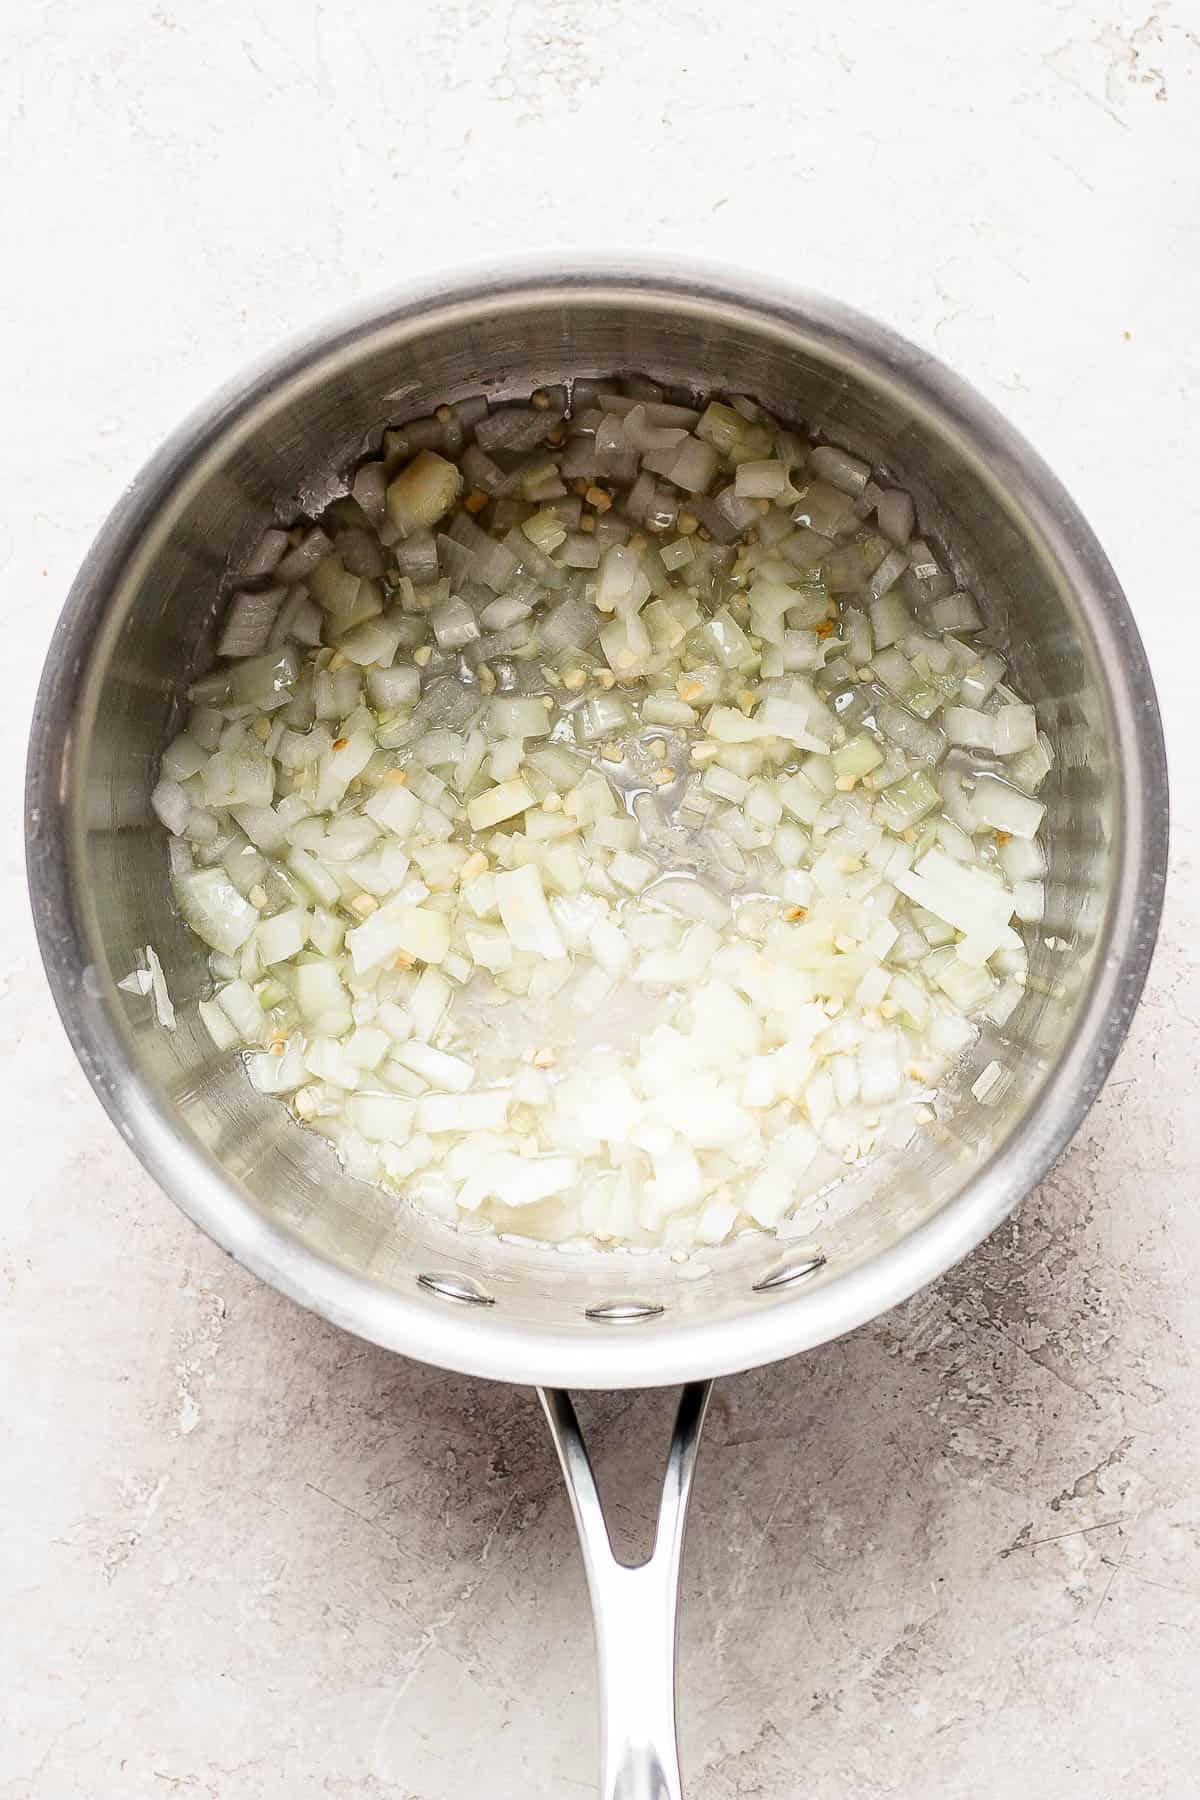 Onion and garlic sautéing in a saucepan.